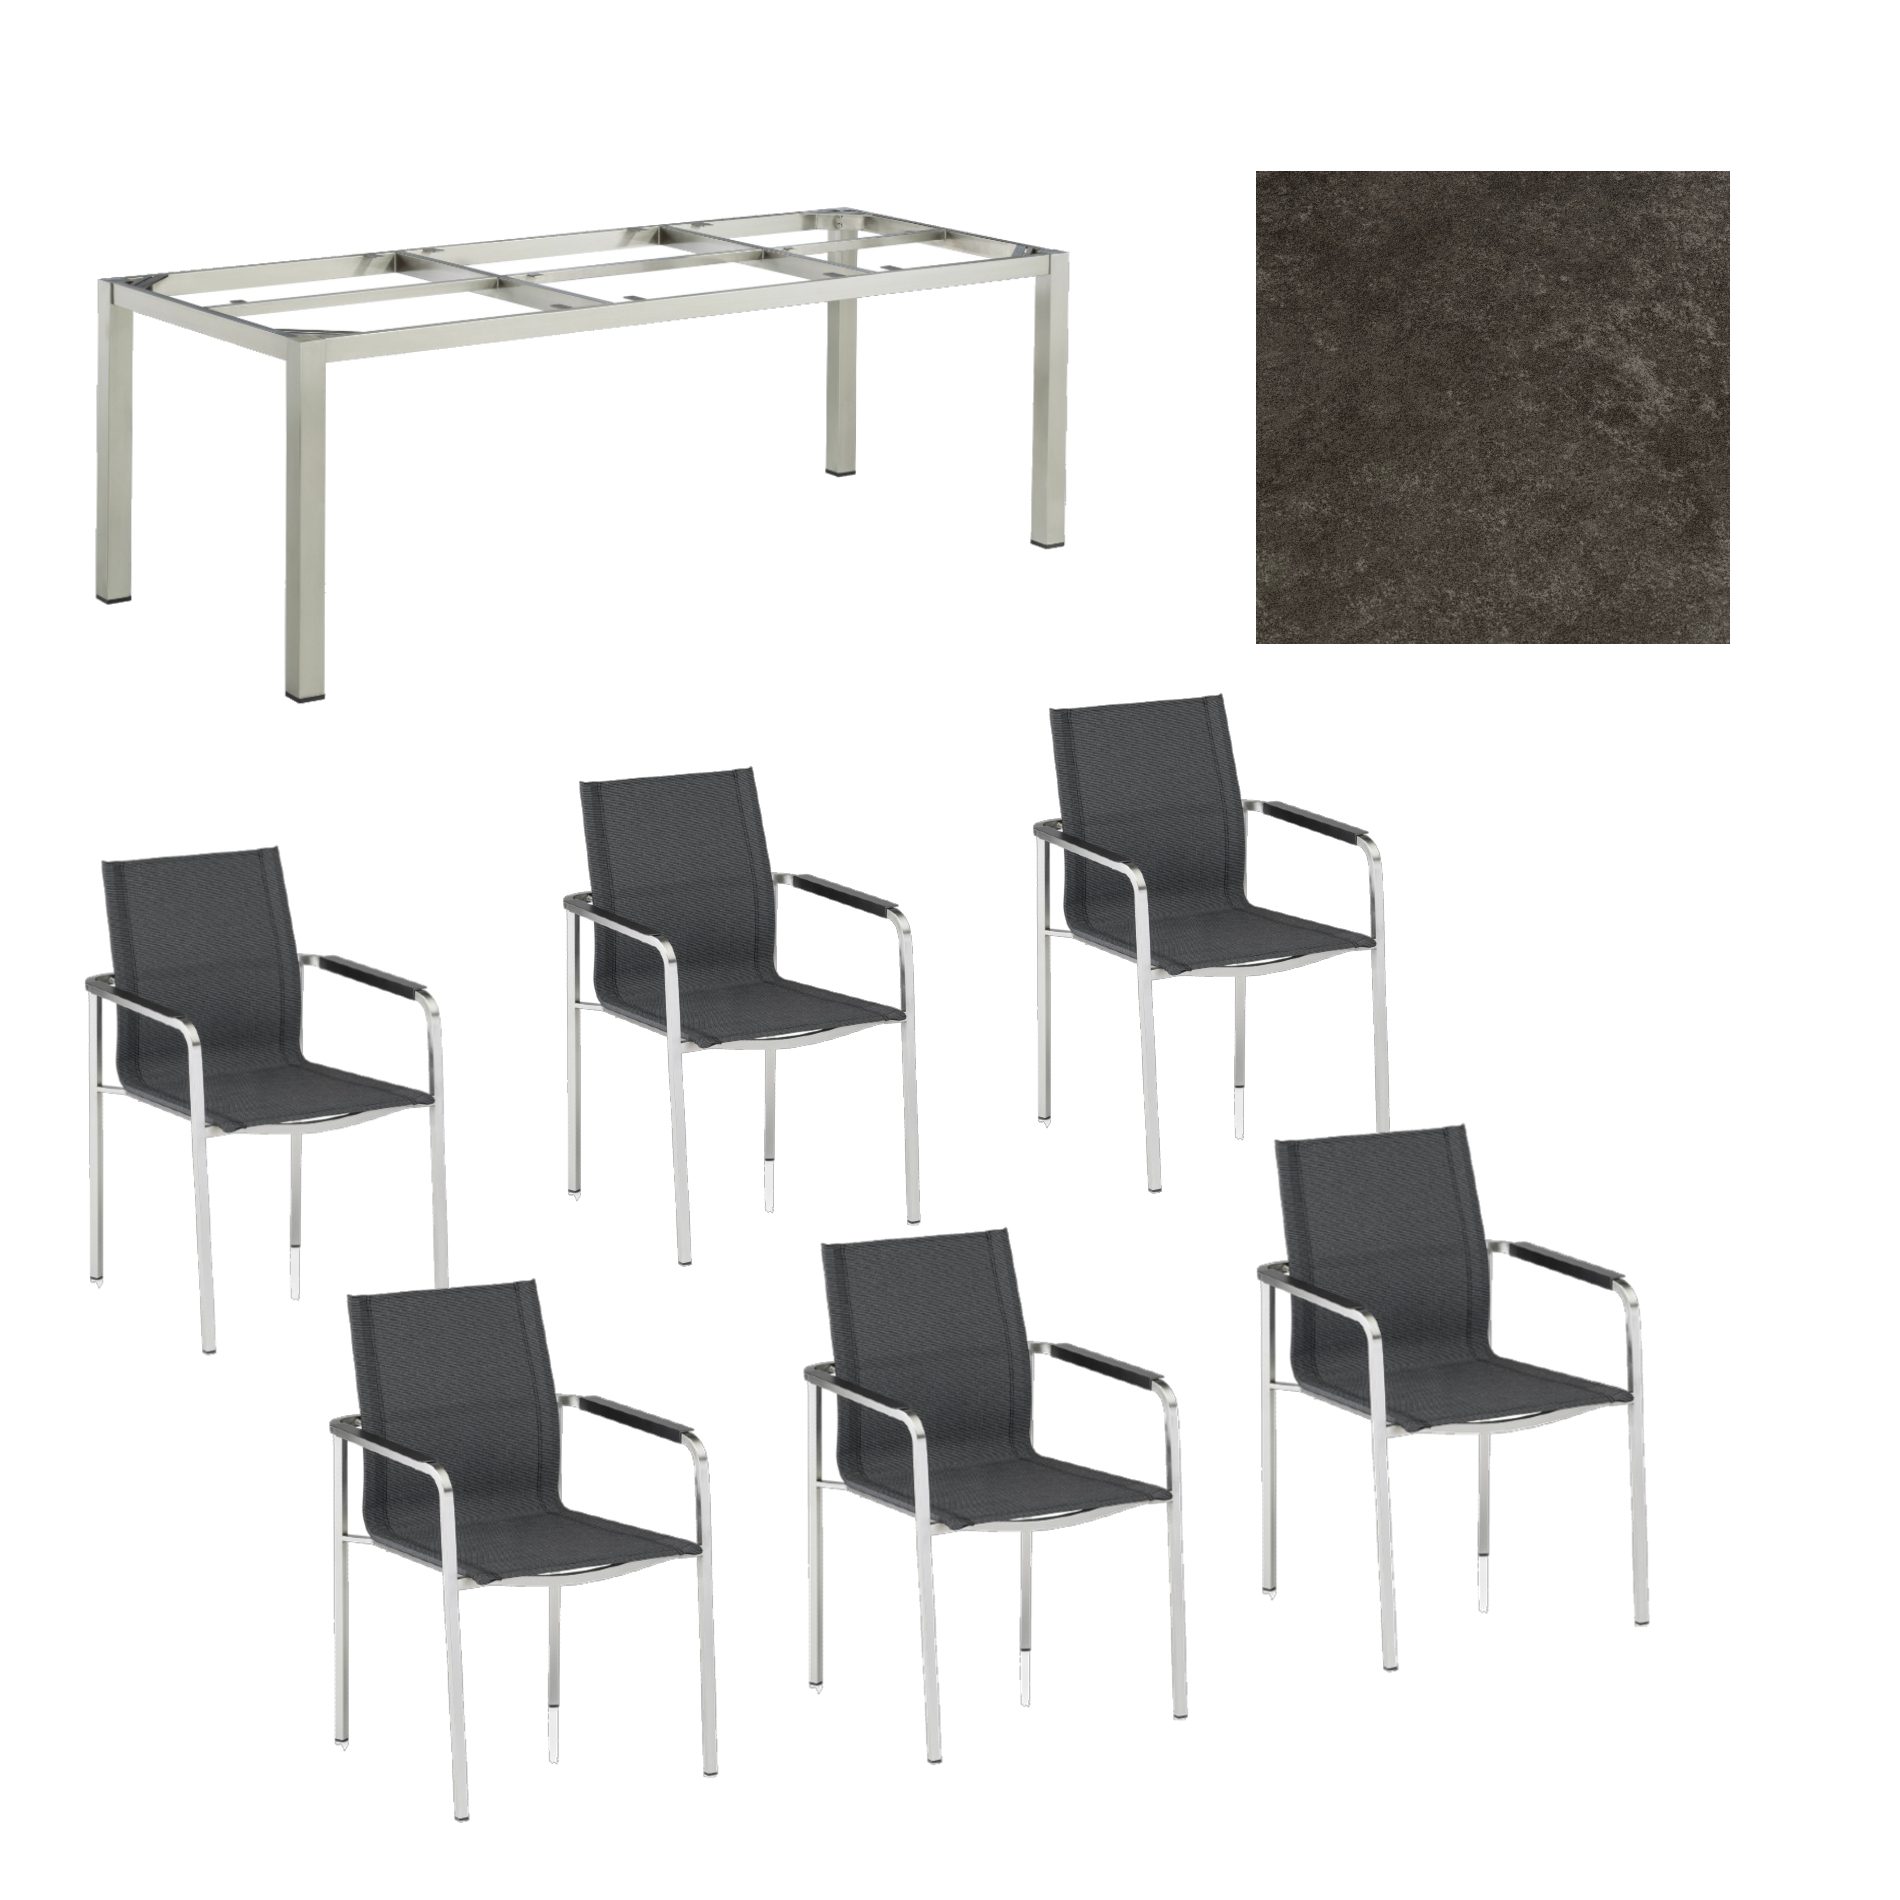 Kettler Gartenmöbel-Set mit "Feel" Stapelstuhl und "Cubic" Tisch, Gestelle Edelstahl, Sitz grau meliert, Tischplatte Keramik anthrazit